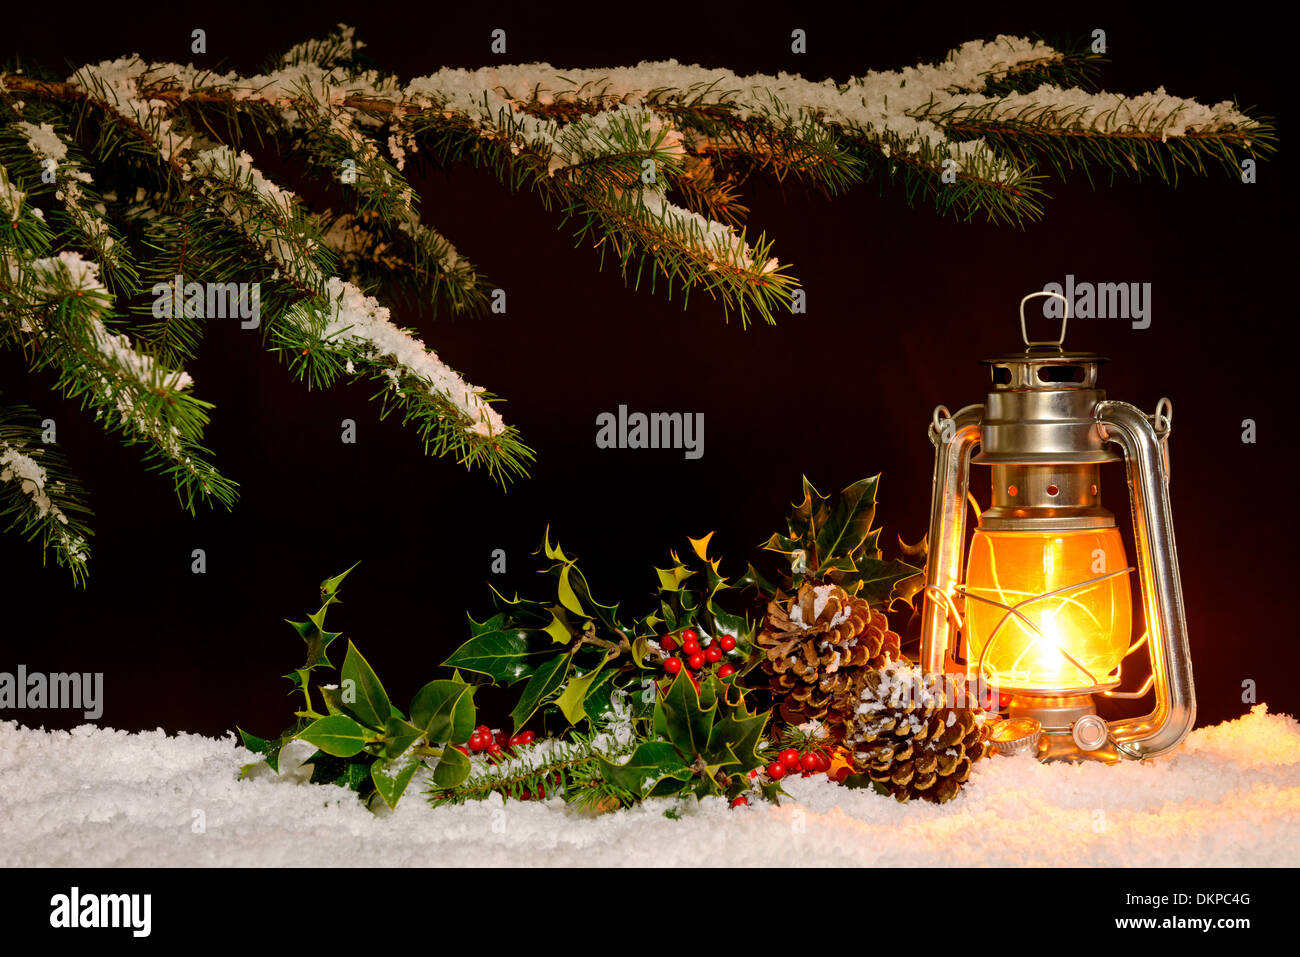 Weihnachts-Szene - eine Öl gefüllt Laterne brennt hell mit Schnee bedeckten Baum, Holly und Ivy im Schein der Lampe beleuchtet. Stockfoto